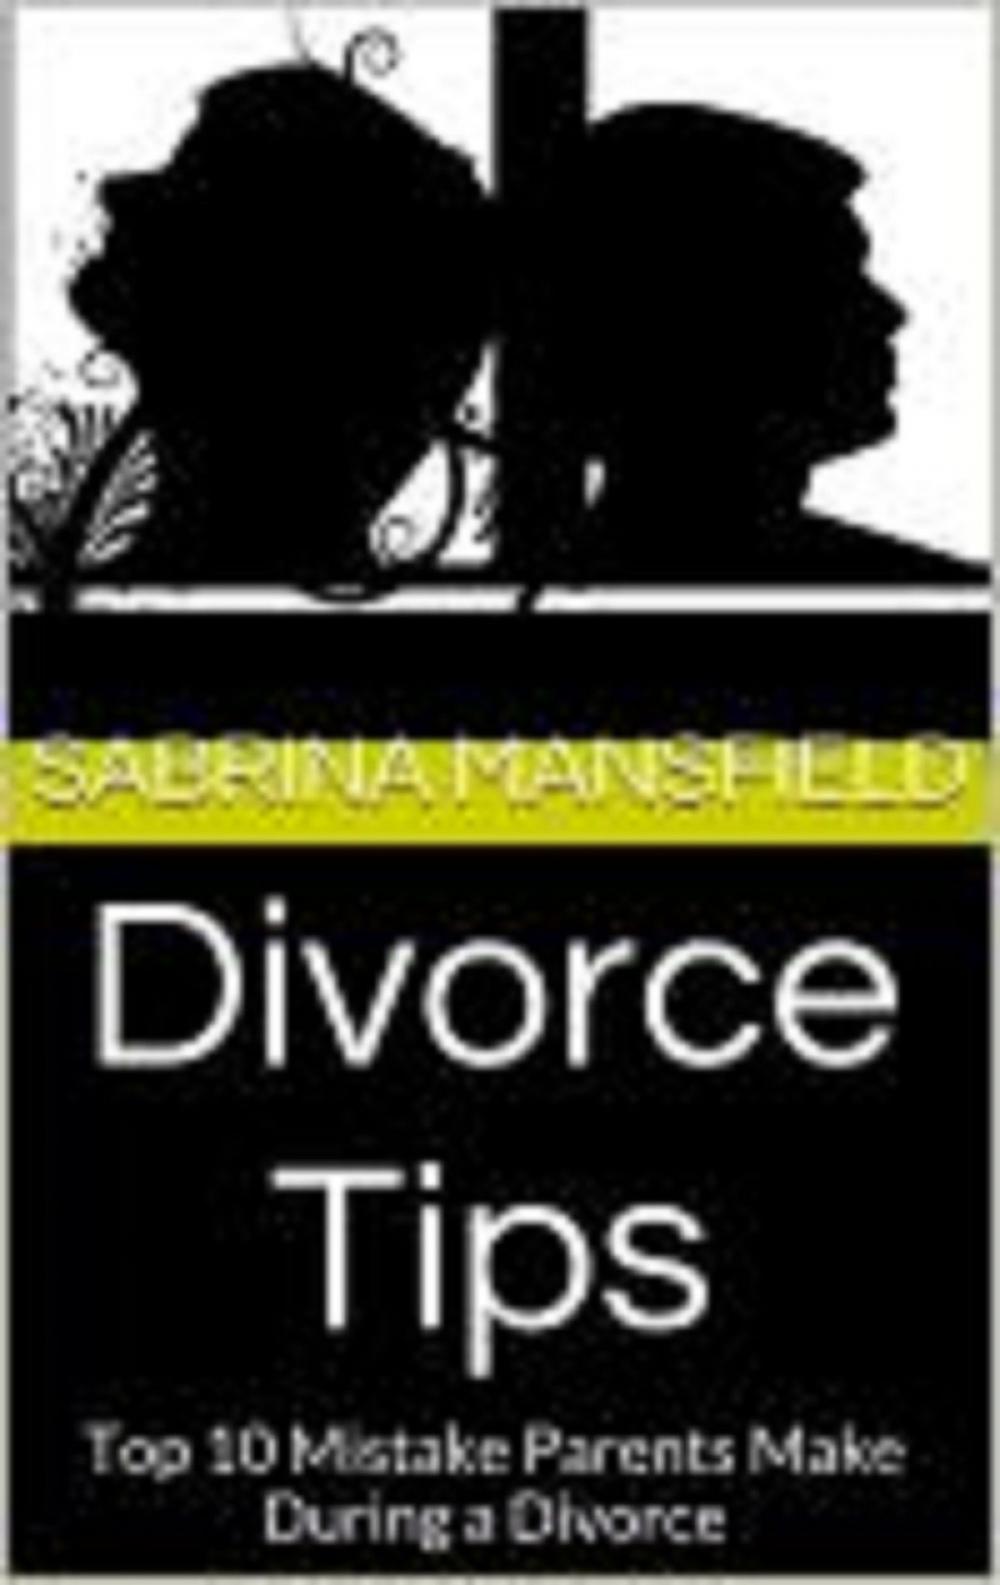 Big bigCover of Divorce Tips: Top 10 Mistake Parents Make During a Divorce